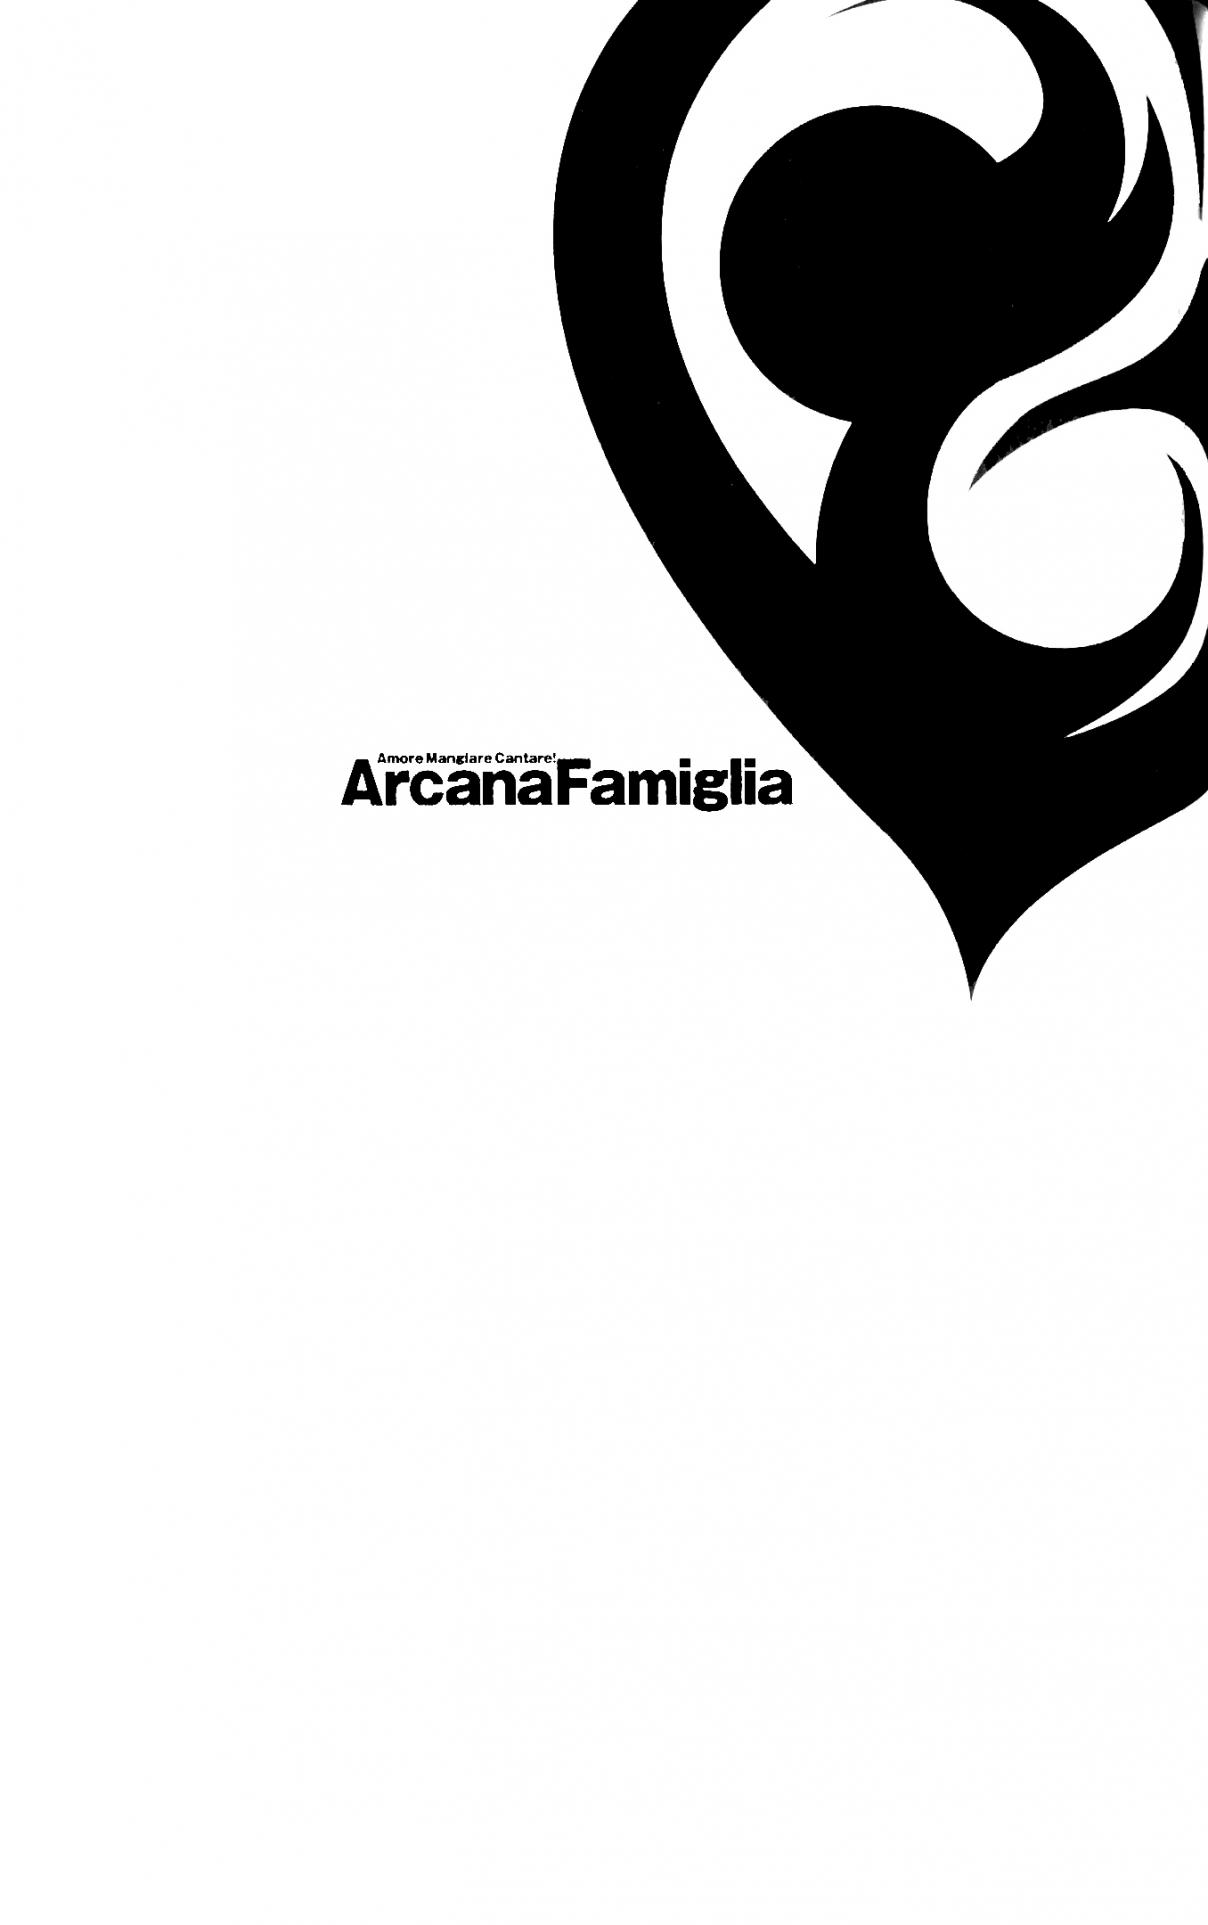 Arcana Famiglia Amore Mangiare Cantare! Vol. 4 Ch. 26 Epilogue